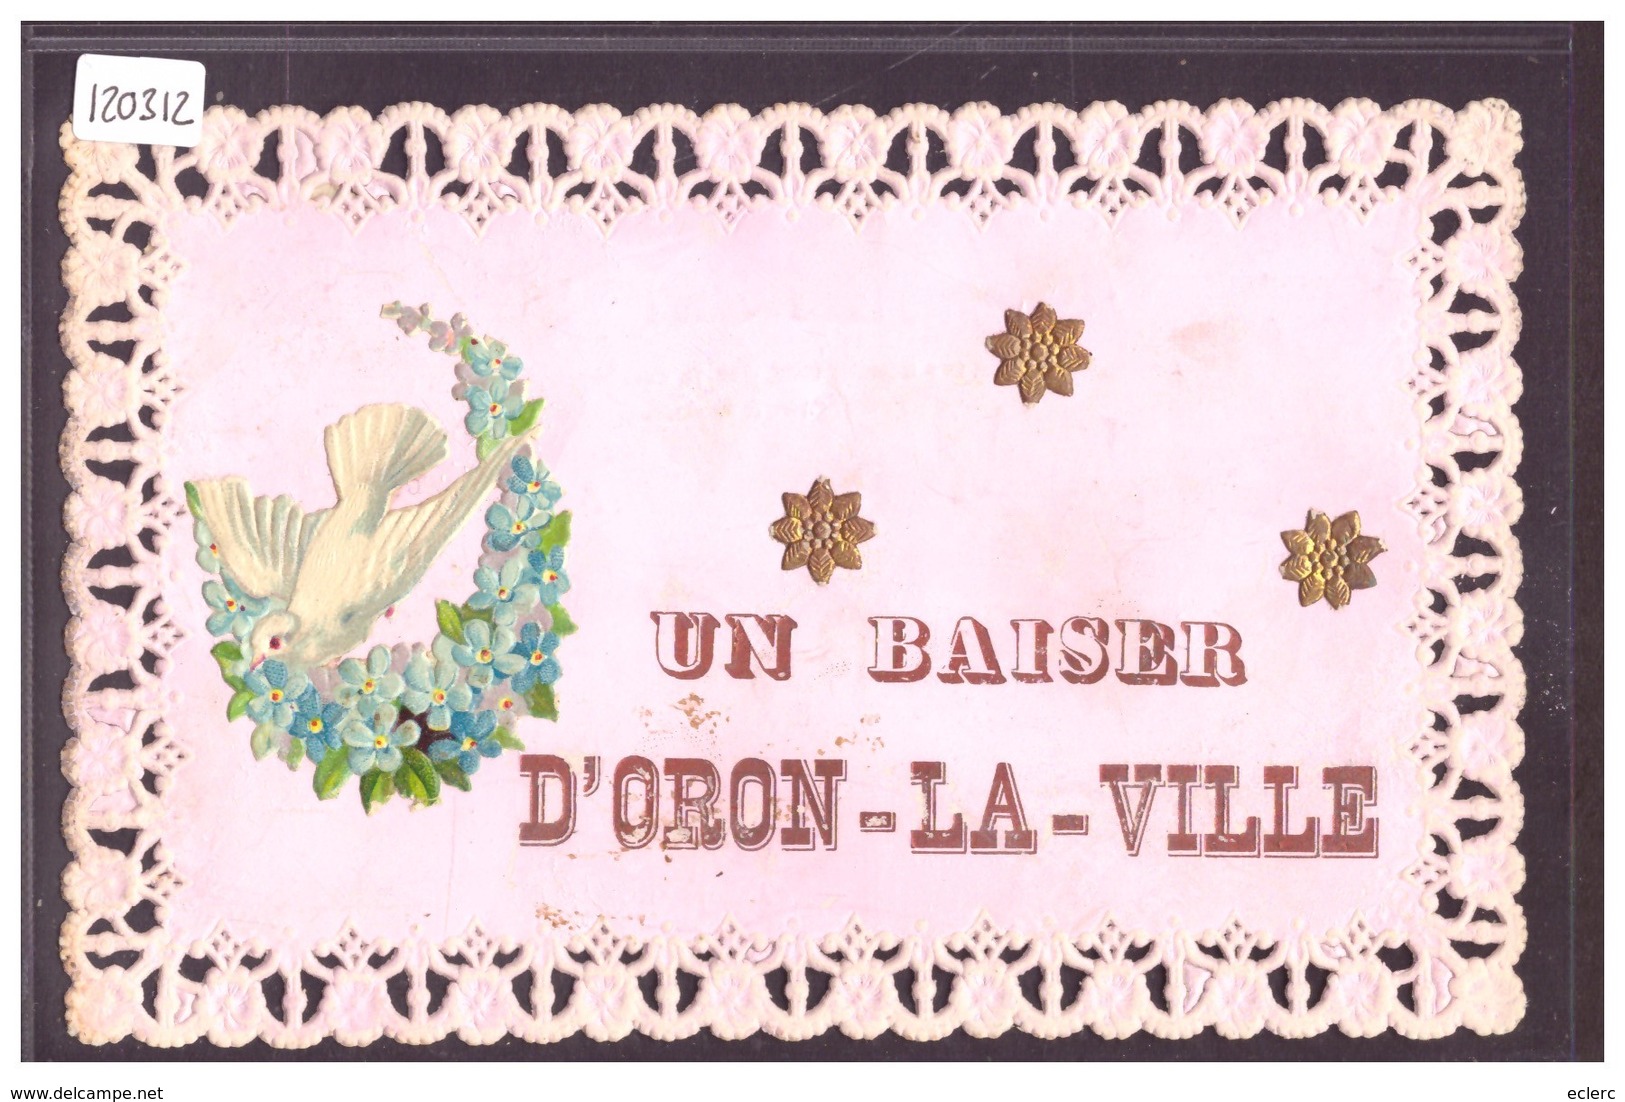 DISTRICT D'ORON - UN BAISER D'ORON LA VILLE - COLOMBE EN APPLIQUE ET FOND NACRE - TB - Oron